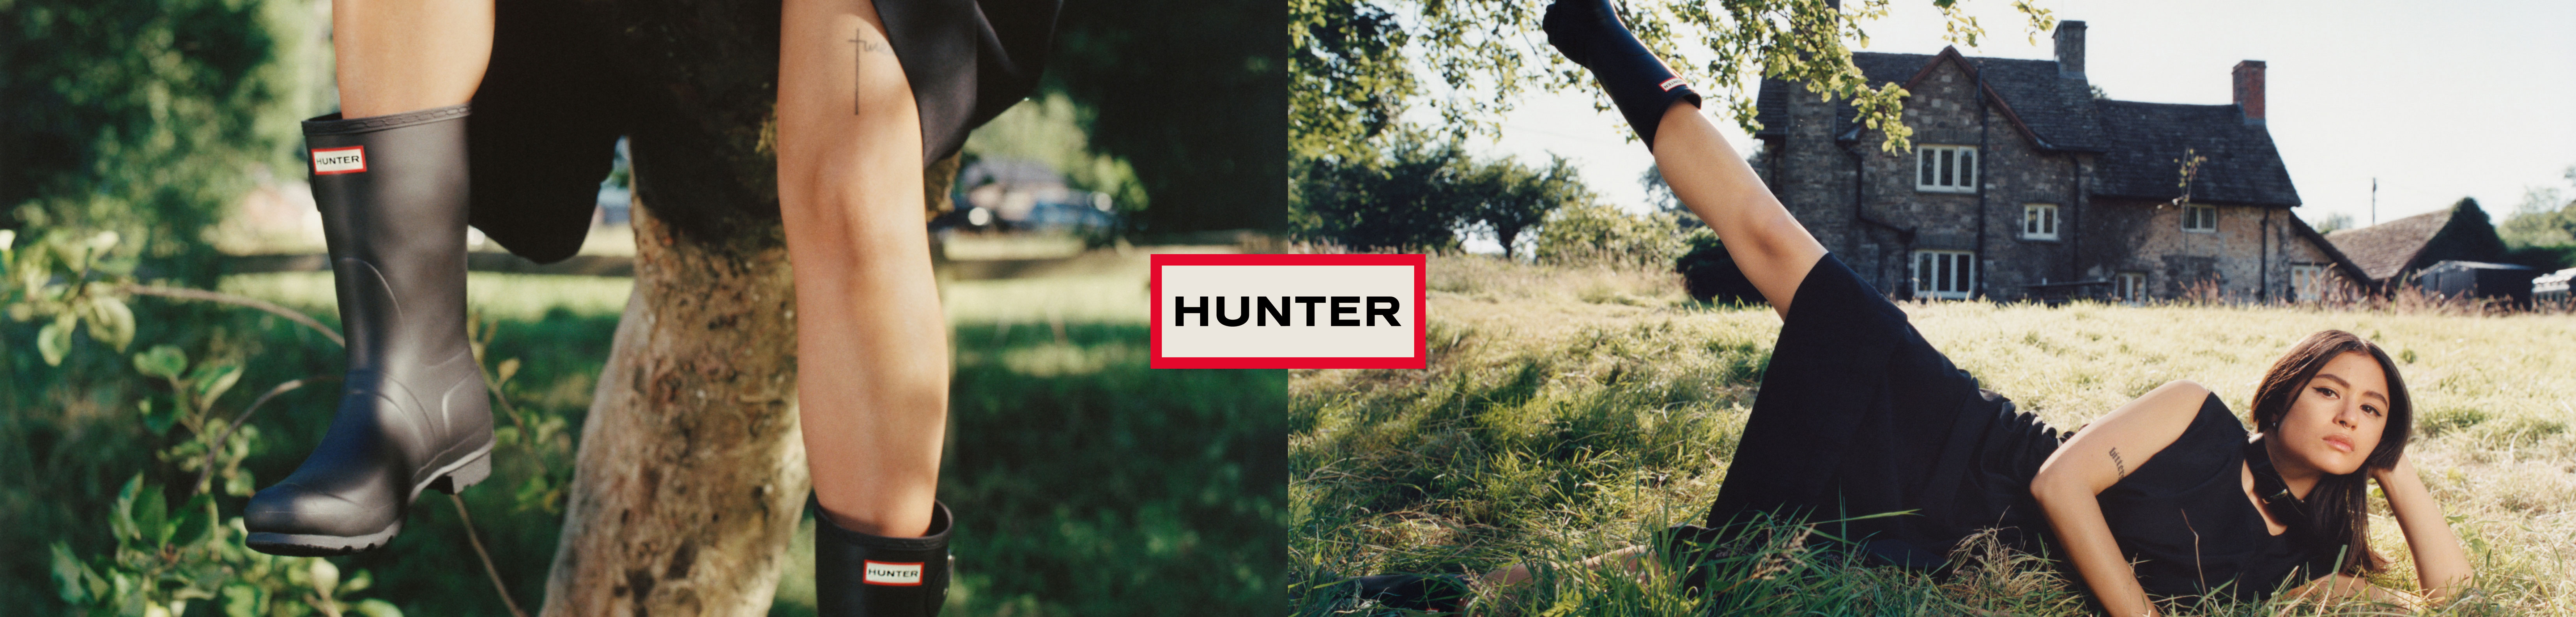 Hunter header image